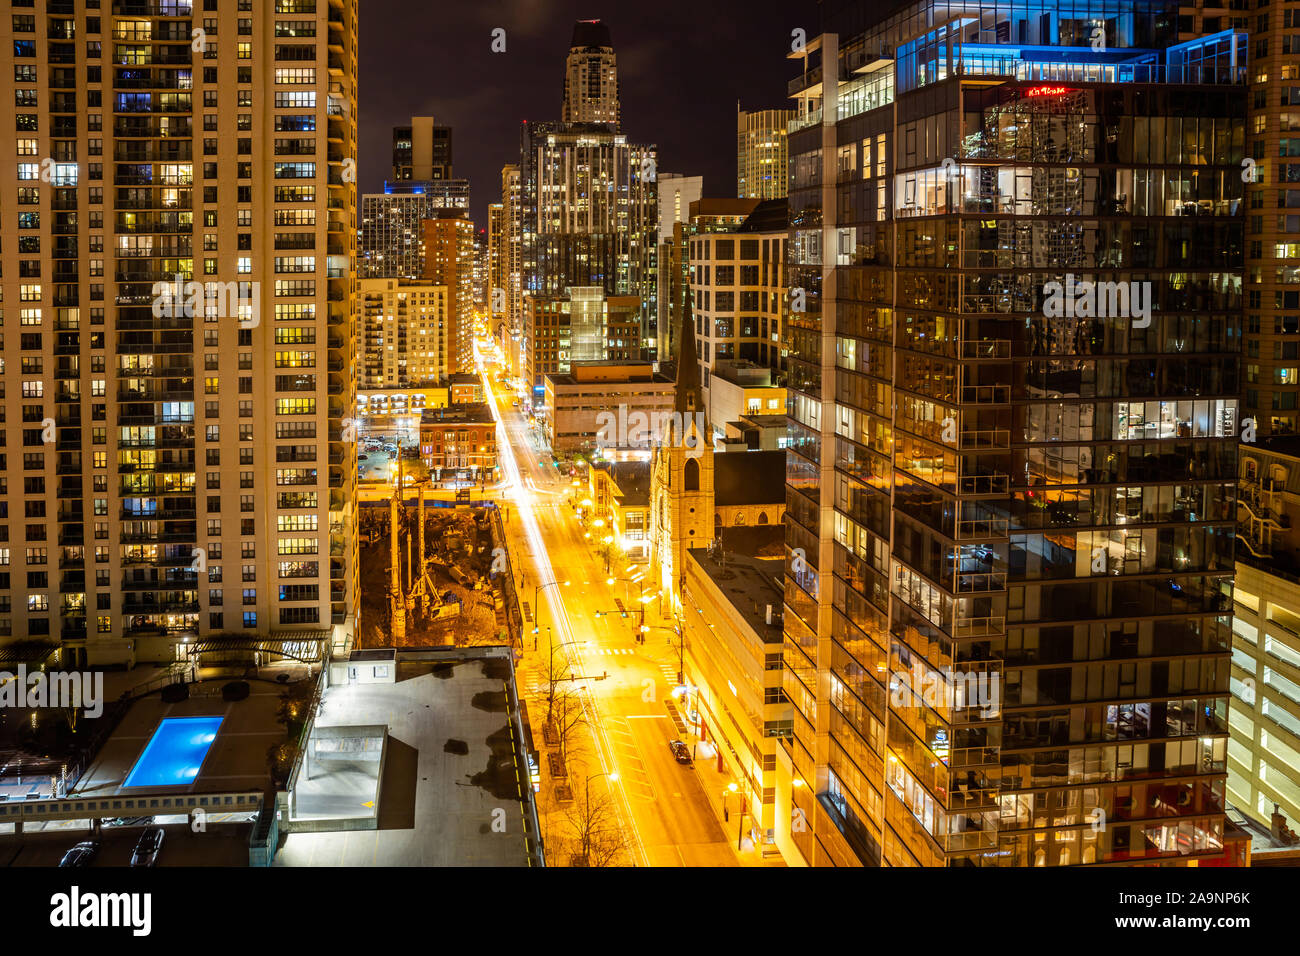 Chicago, Illinois, USA, die Lichter der Stadt in der Nacht. Über blick auf den beleuchteten Wolkenkratzer im Stadtzentrum, Glas Gebäude reflektiert die Lichter des s Stockfoto